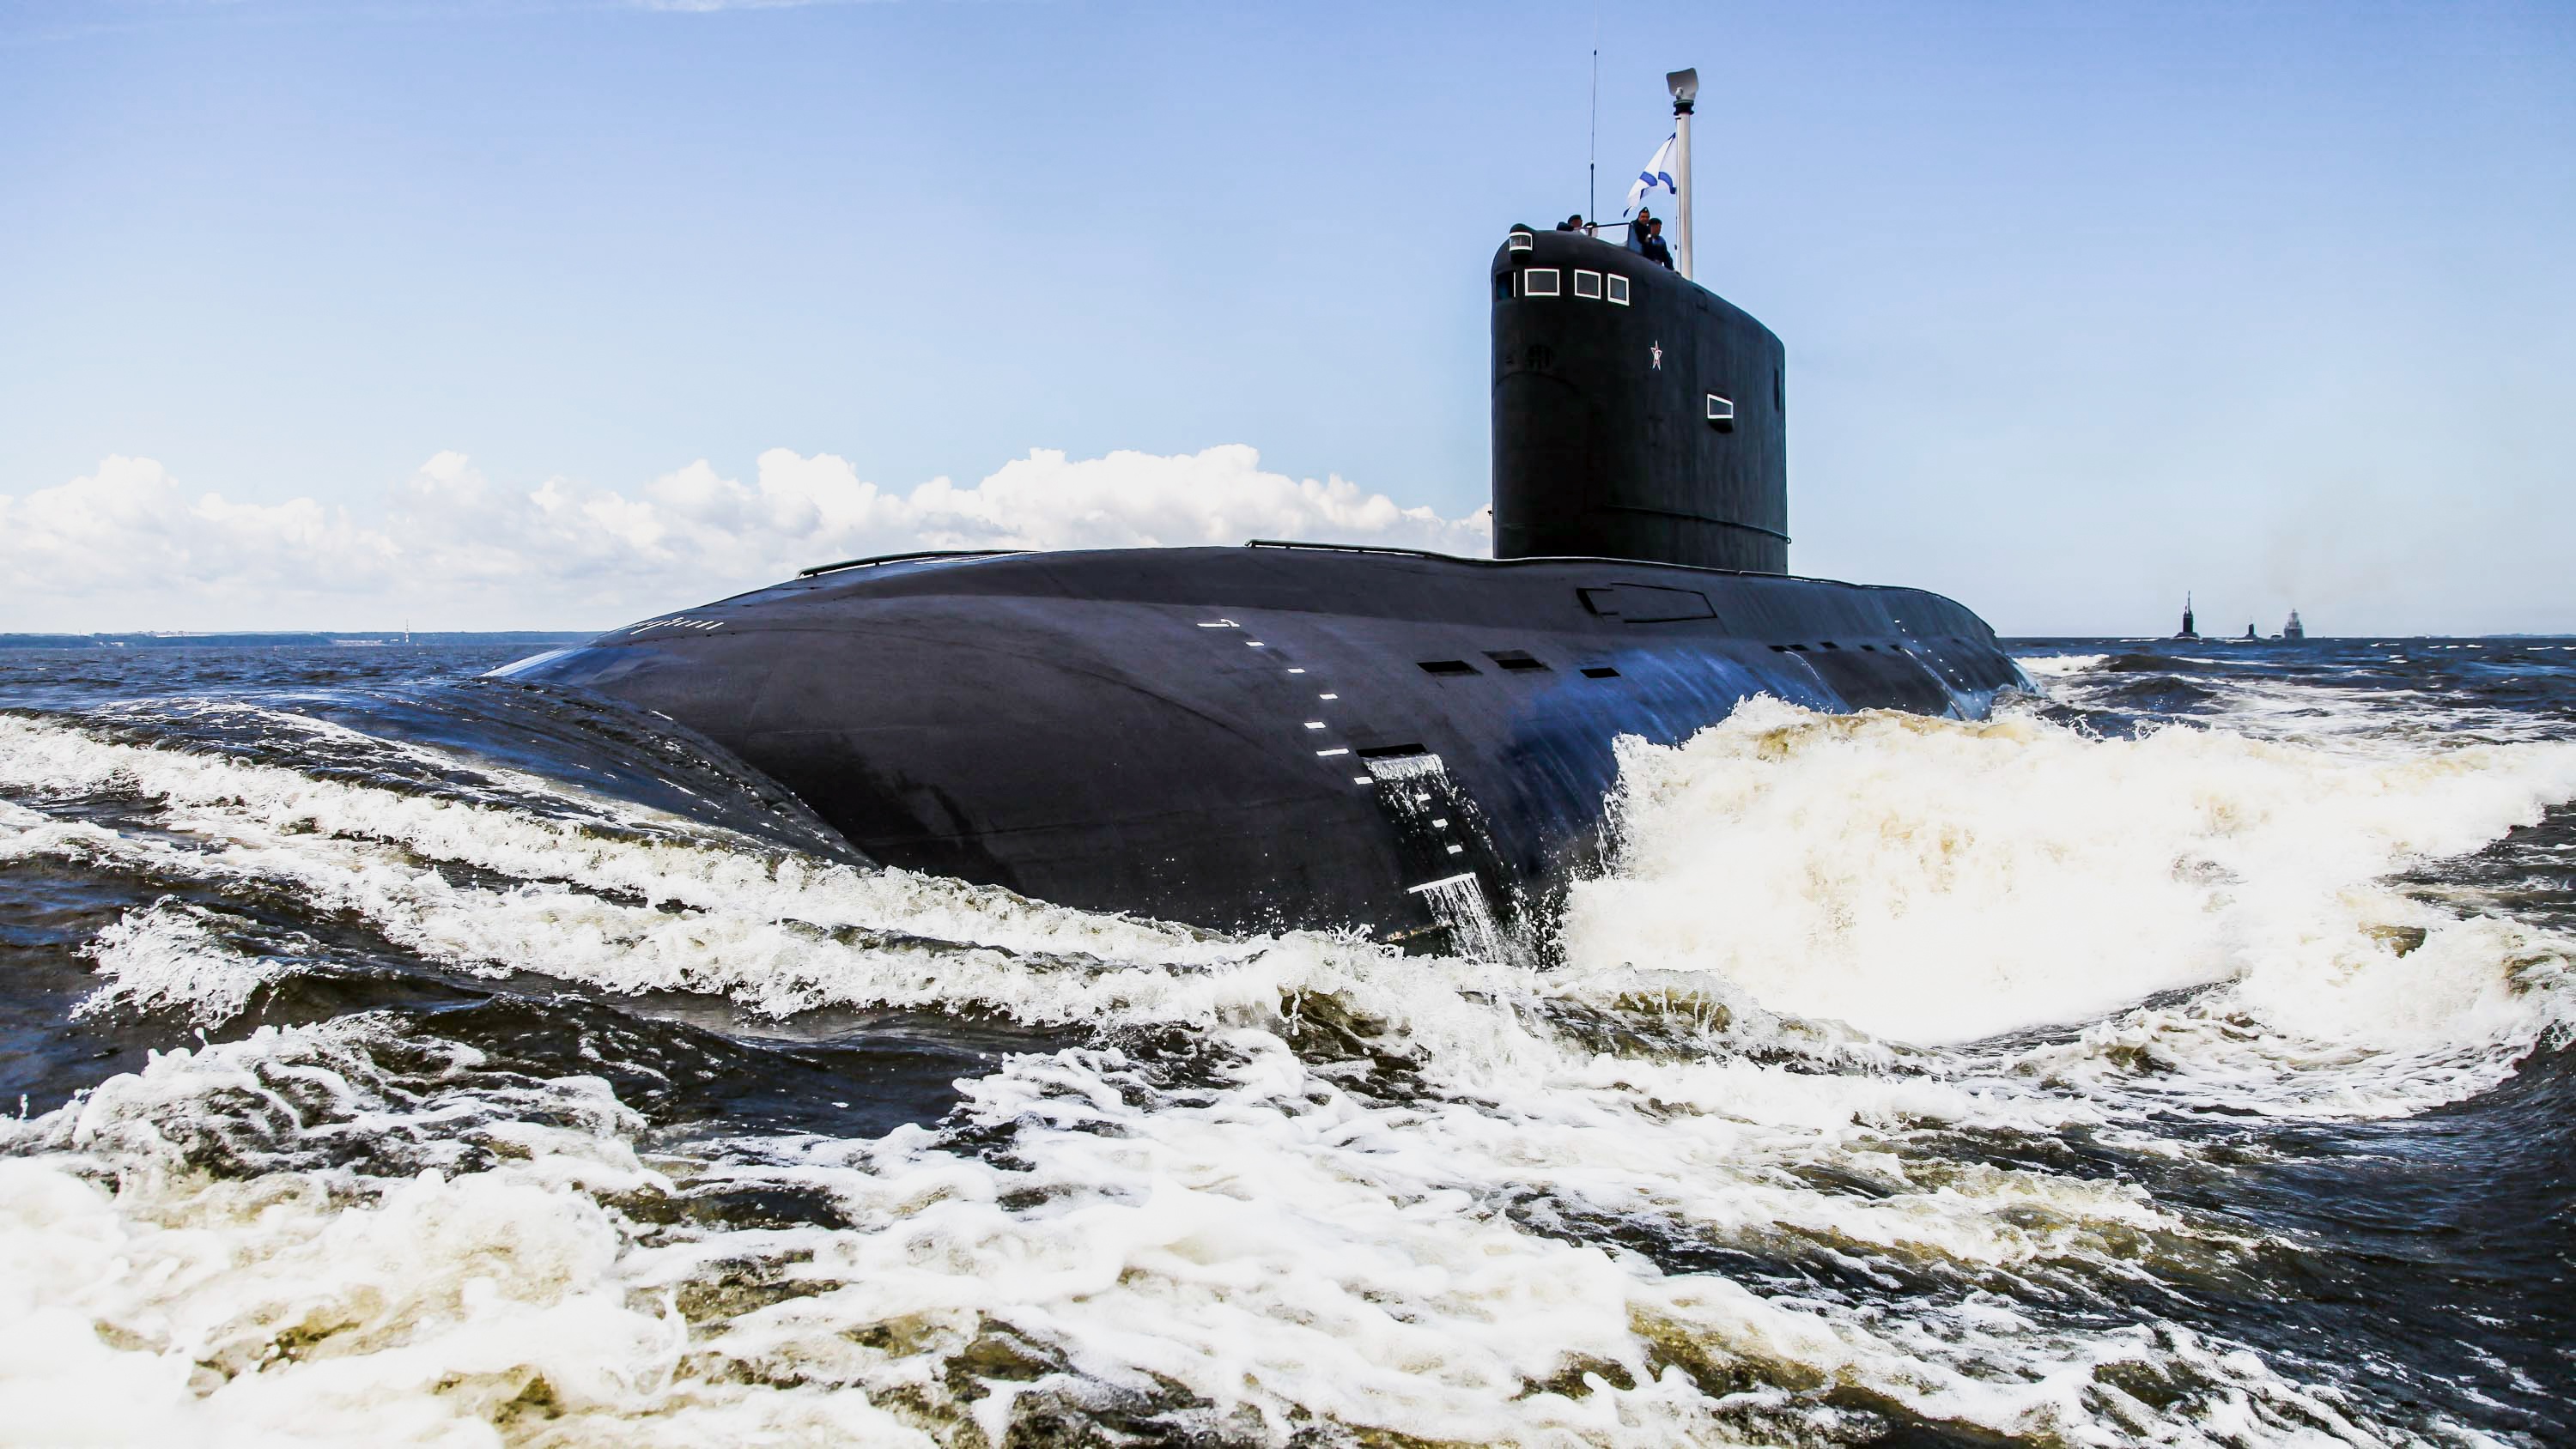 Пл 00. Подводные лодки проекта 636 «Варшавянка». Подводная лодка проекта 877 палтус. Дизель-электрическая подводная лодка проекта 636.3 «Волхов». Варшавянка подводная лодка 636.3.